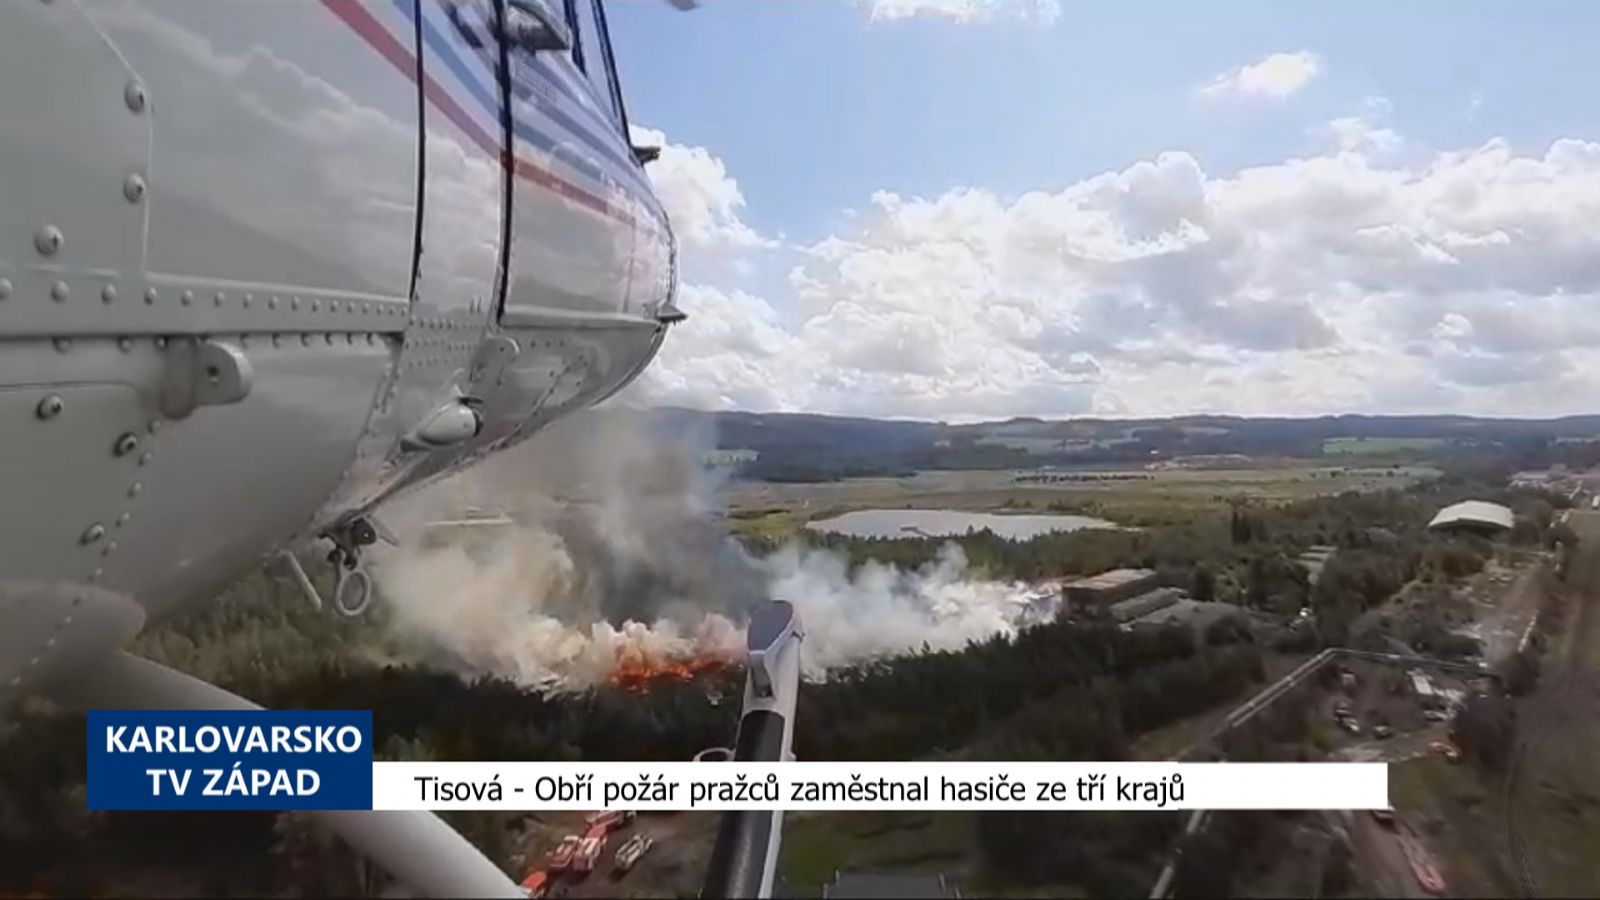 Tisová: Obří požár pražců zaměstnal hasiče ze tří krajů (TV Západ)